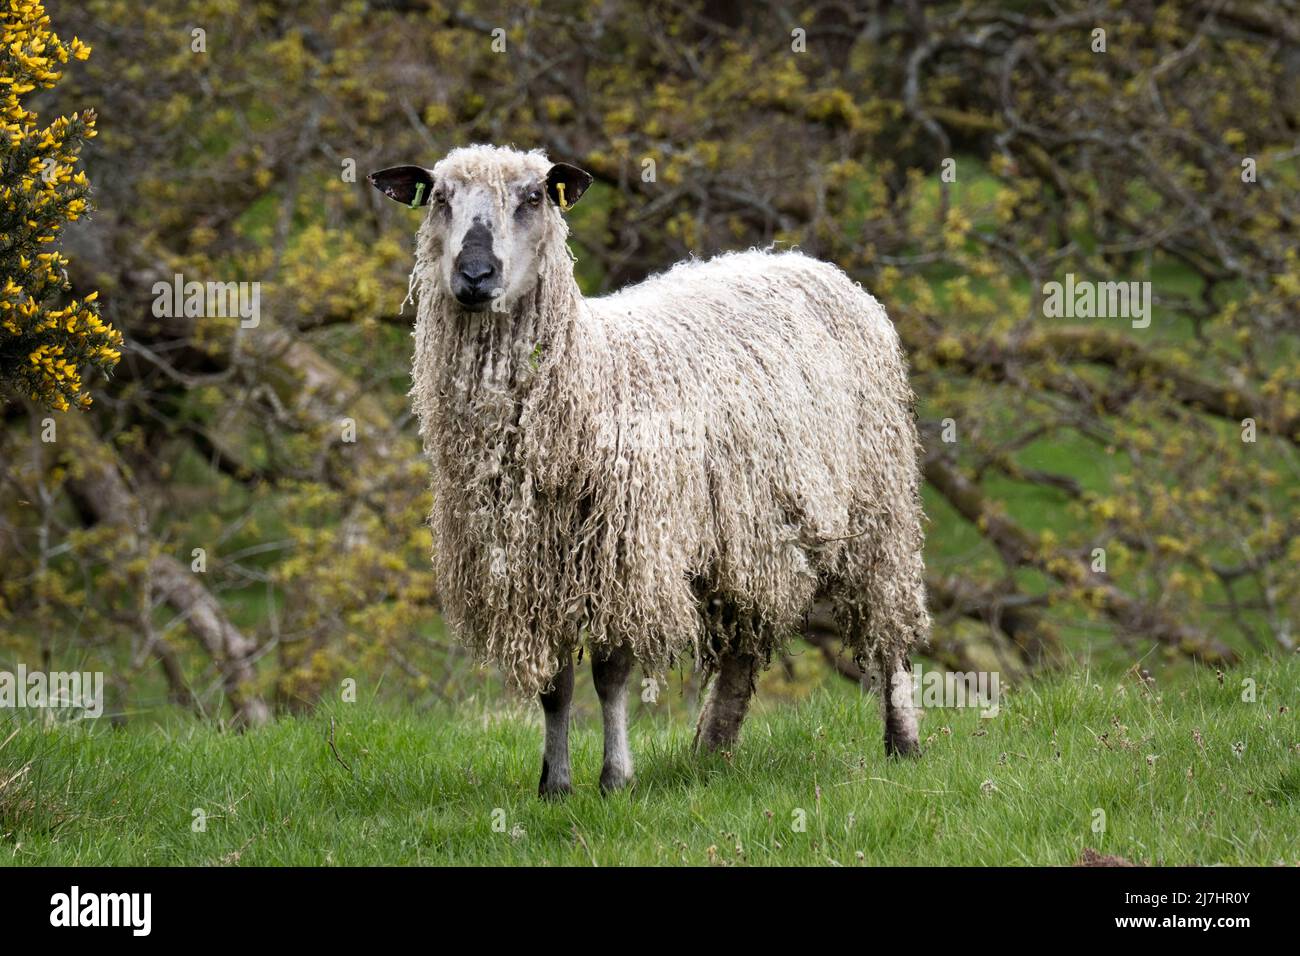 Una pecora di Teeswater, vedere a Wray, Lancashire. Il Teeswater è una rara razza di pecora di lana lunga originaria di Teesdale nella contea di Durham. Foto Stock